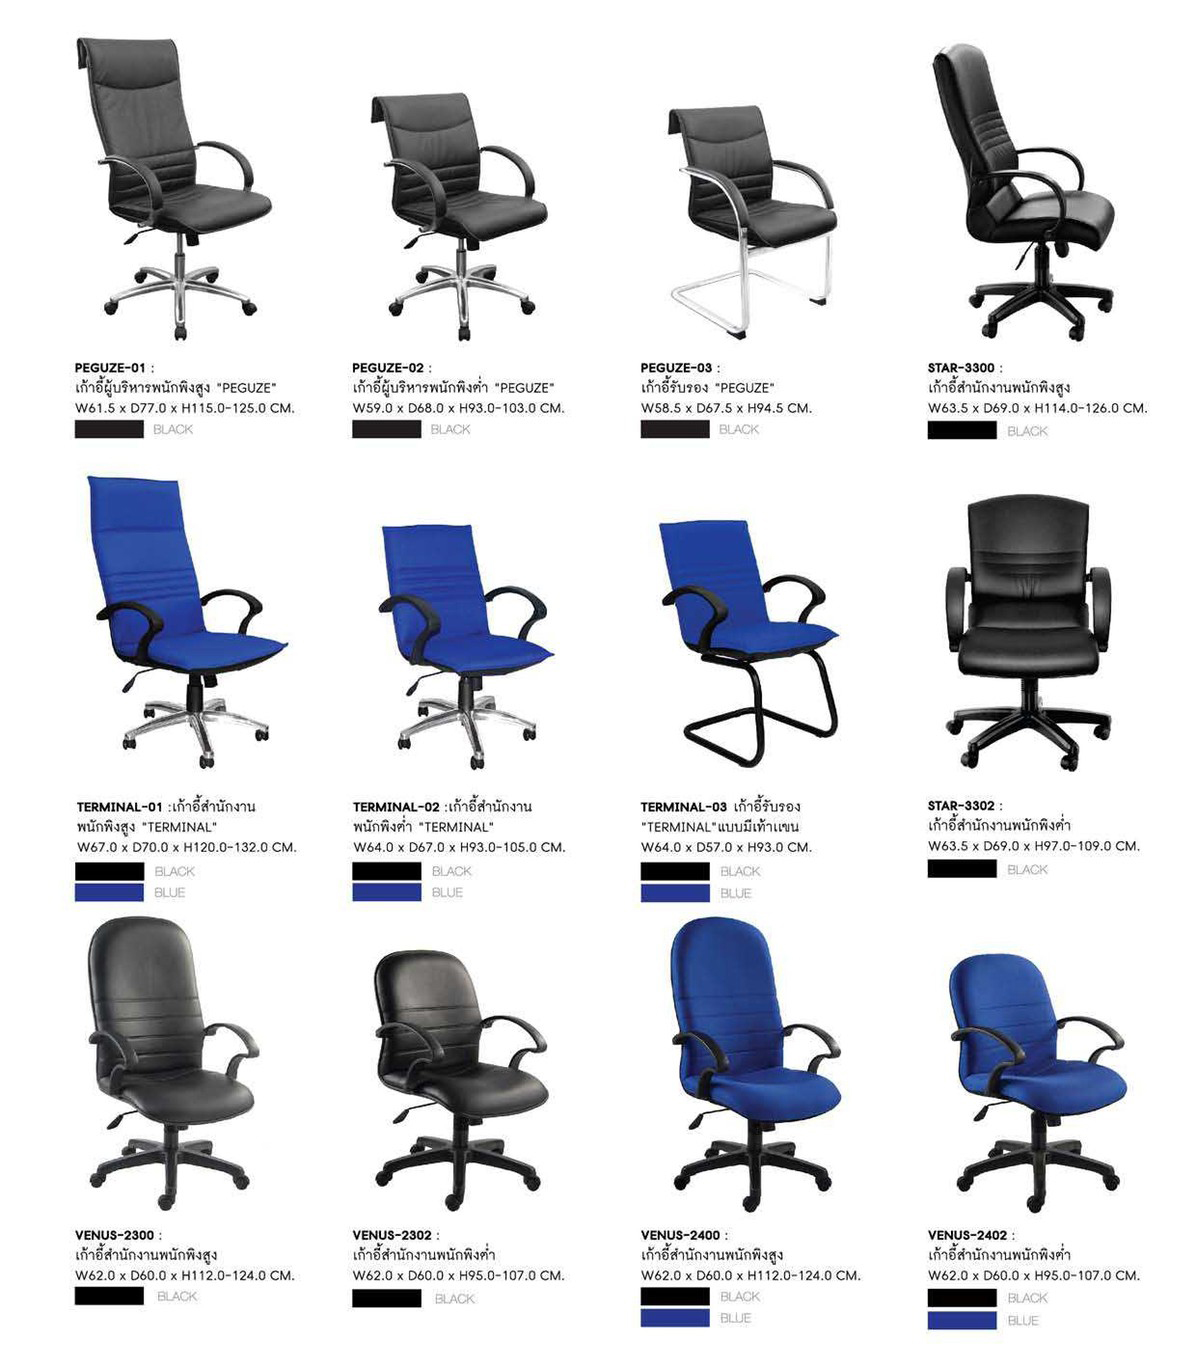 60086::TERMINAL-01::เก้าอี้ผู้บริหาร TERMINAL-01 ขนาด ก670xล700xส1200-1320 มม. มี2สี (สีดำ,สีน้ำเงิน) เก้าอี้ผู้บริหาร SURE